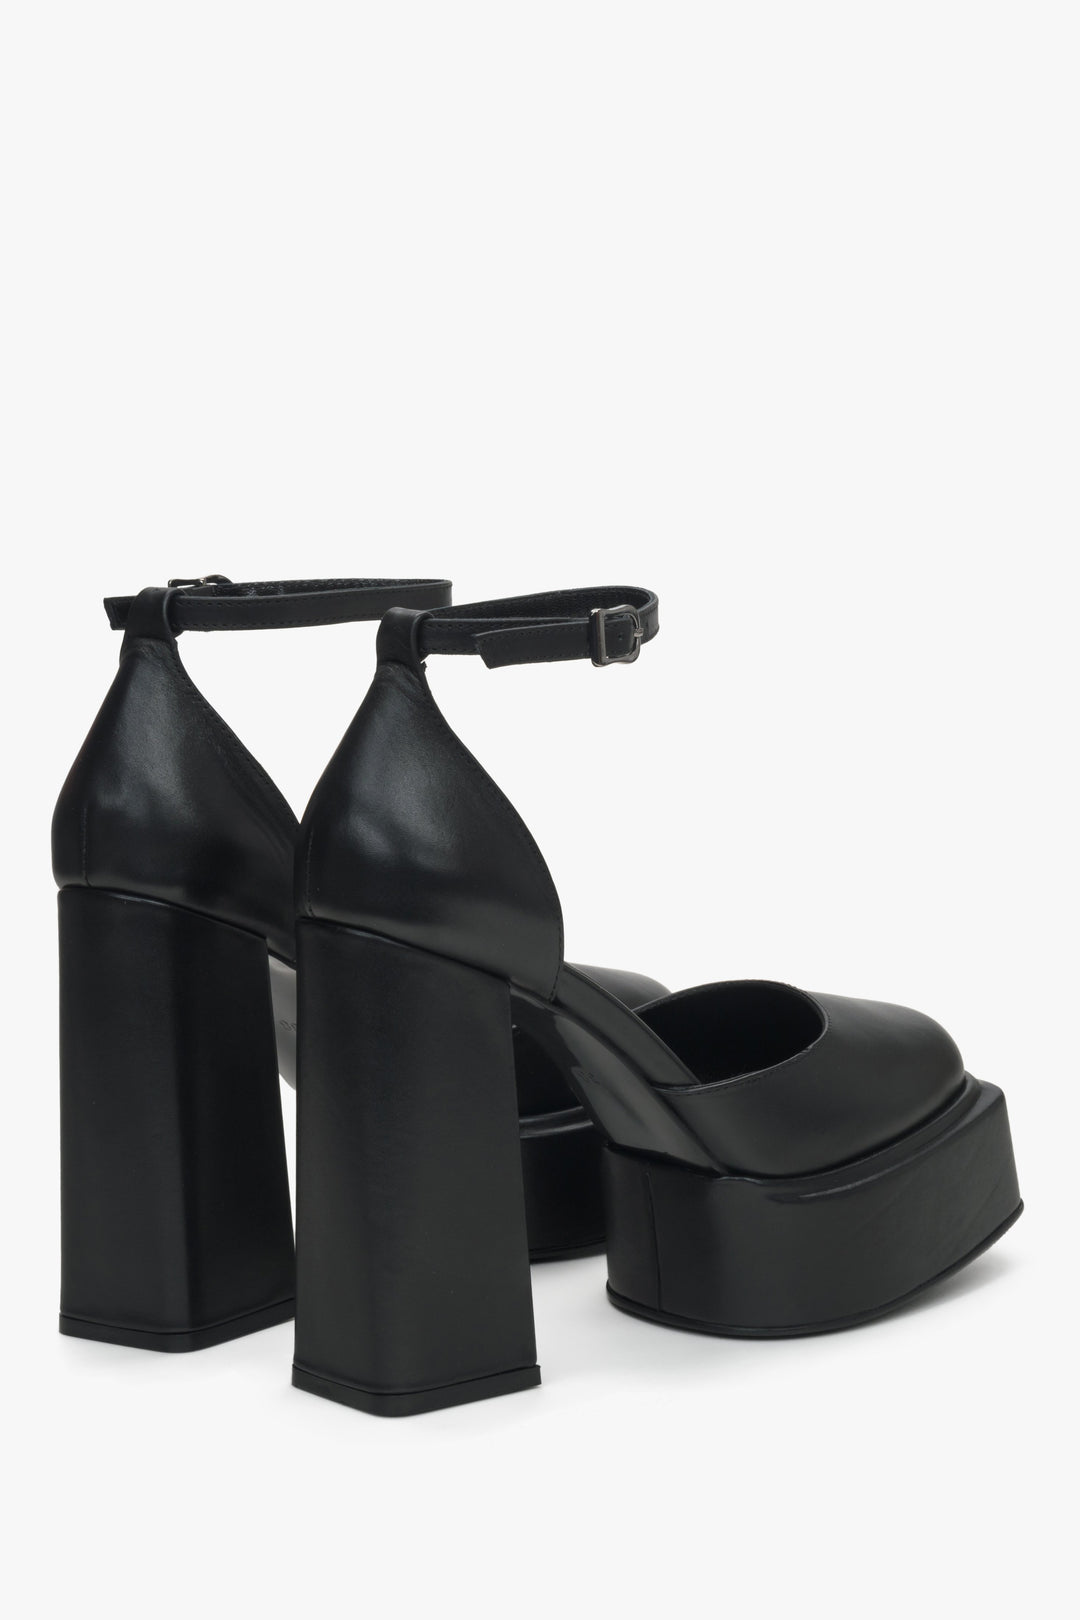 Sandały damskie czarne ze skóry naturalnej Estro na słupku i platformie - prezentacja zapiętka butów i obcasa.